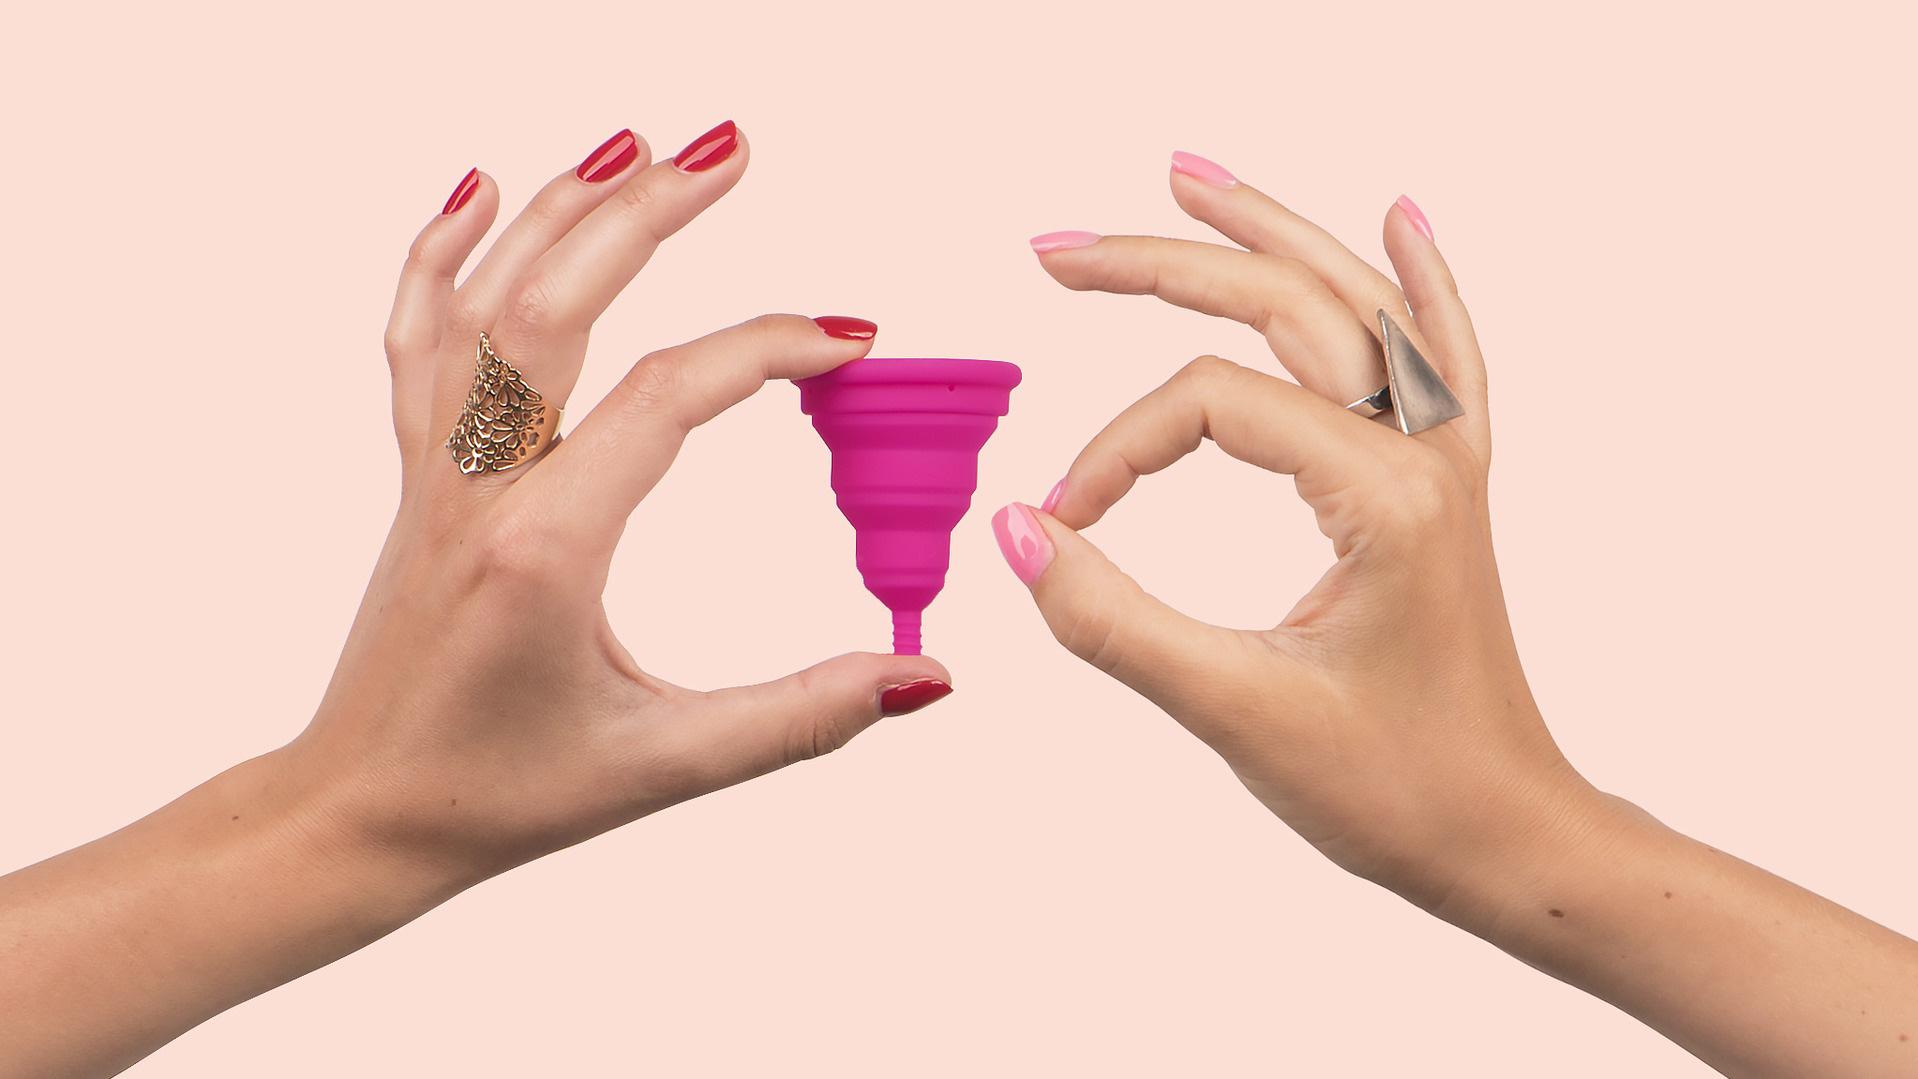 Bild von zwei Frauenhänden: Eine hält eine pinke Menstruationstasse, die andere macht den Fingerkreis.